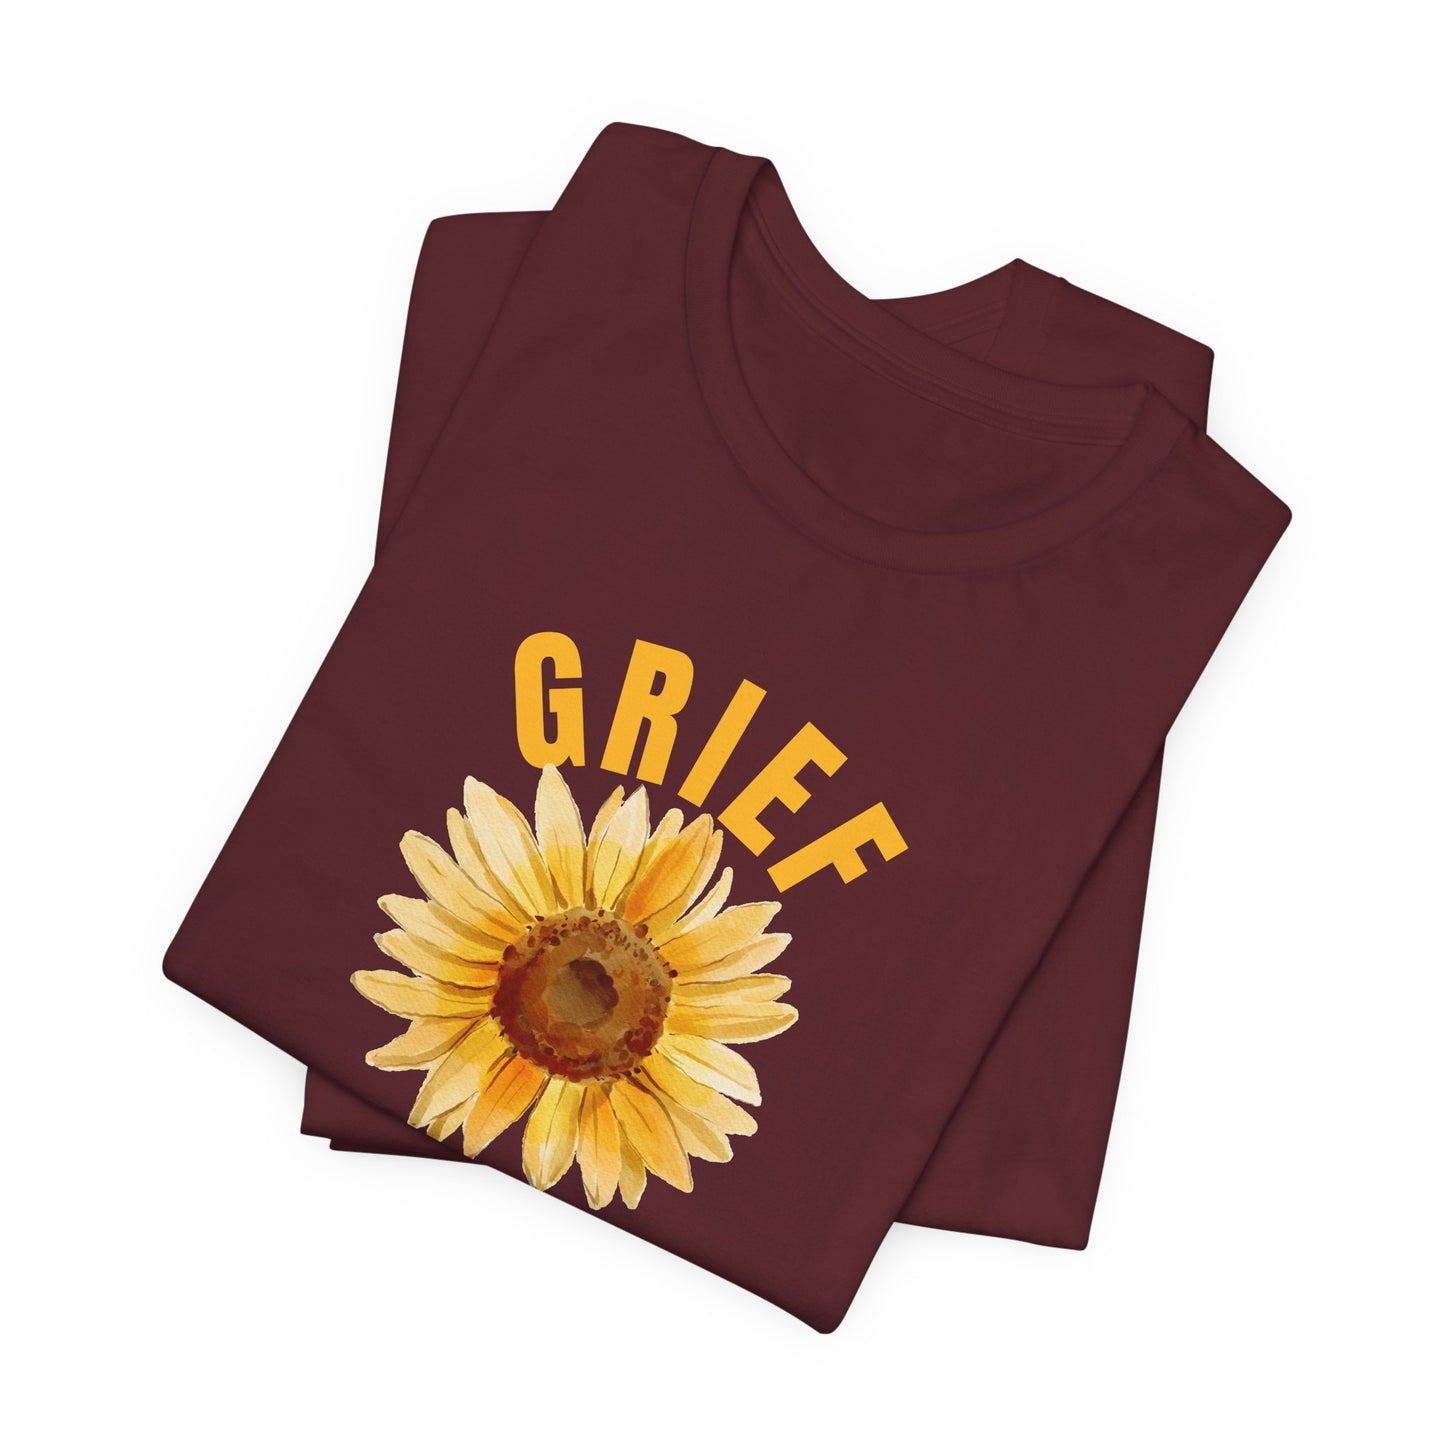 Grief Survivor With Sunflower Bella Canvas 3001 Unisex Tee